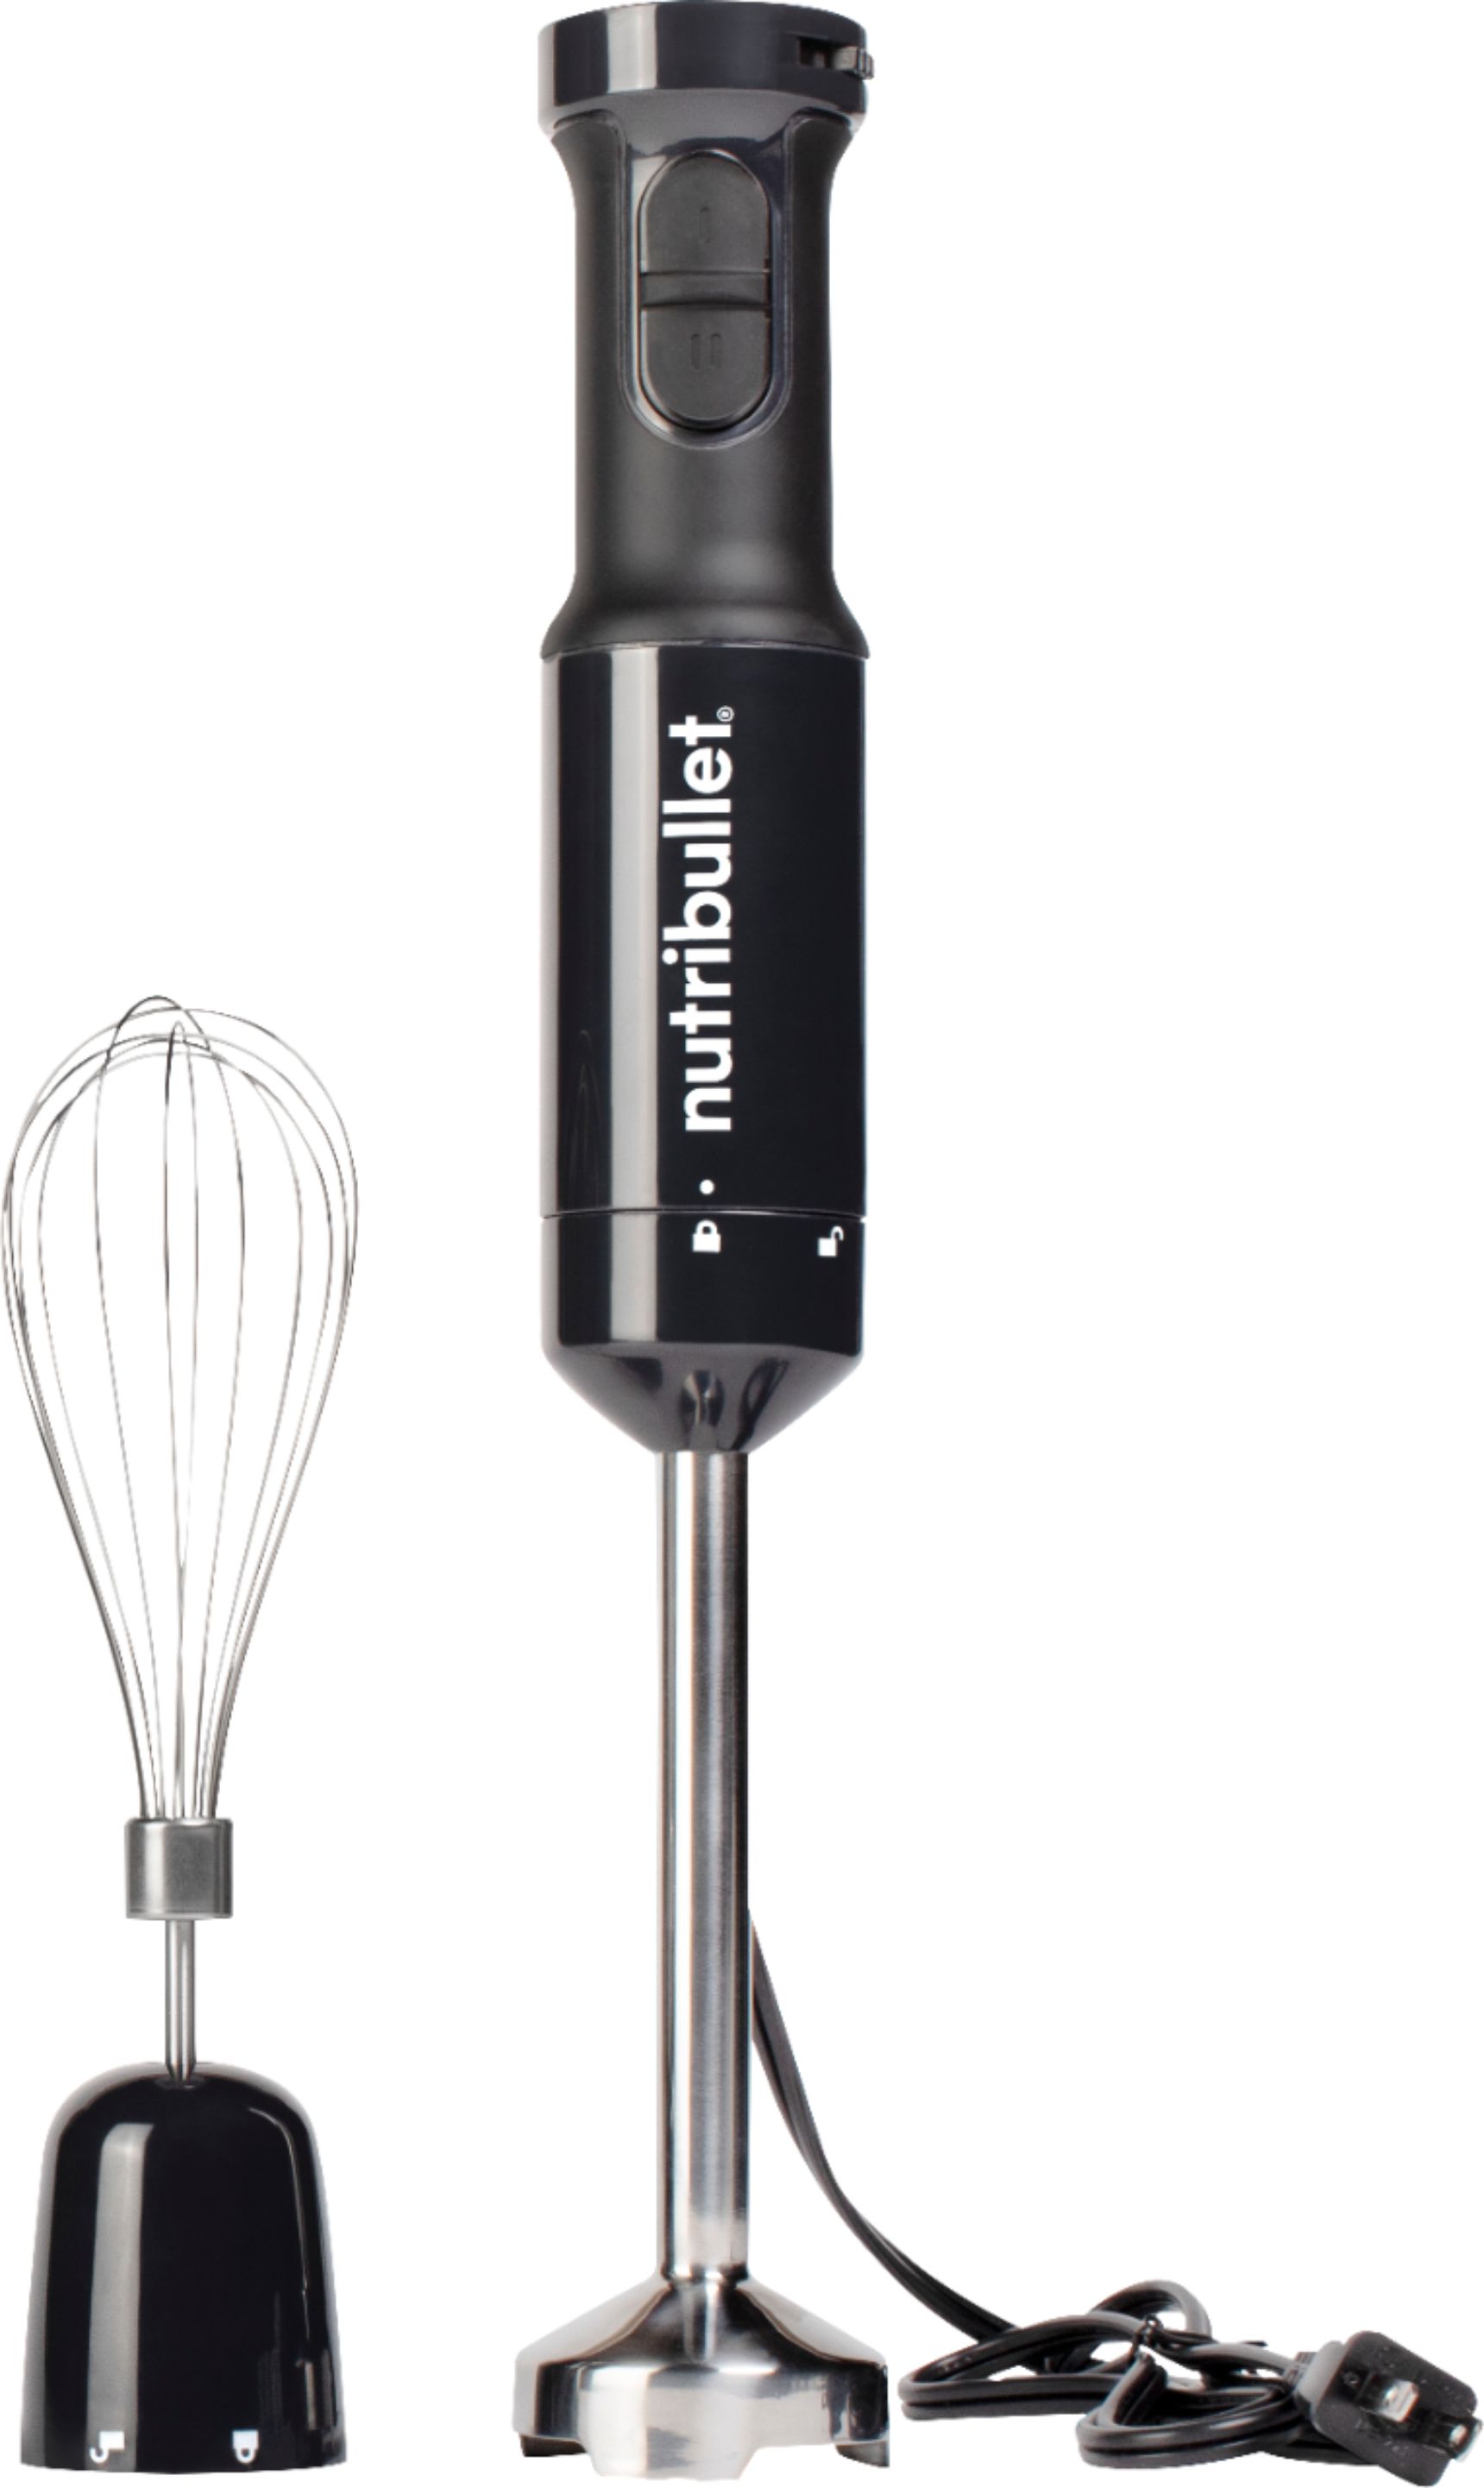  GENQORN NutriBullet Pro 1000 Watt Blender Replacement Extractor  Cross Blade, Black, 32 Ounce : Home & Kitchen